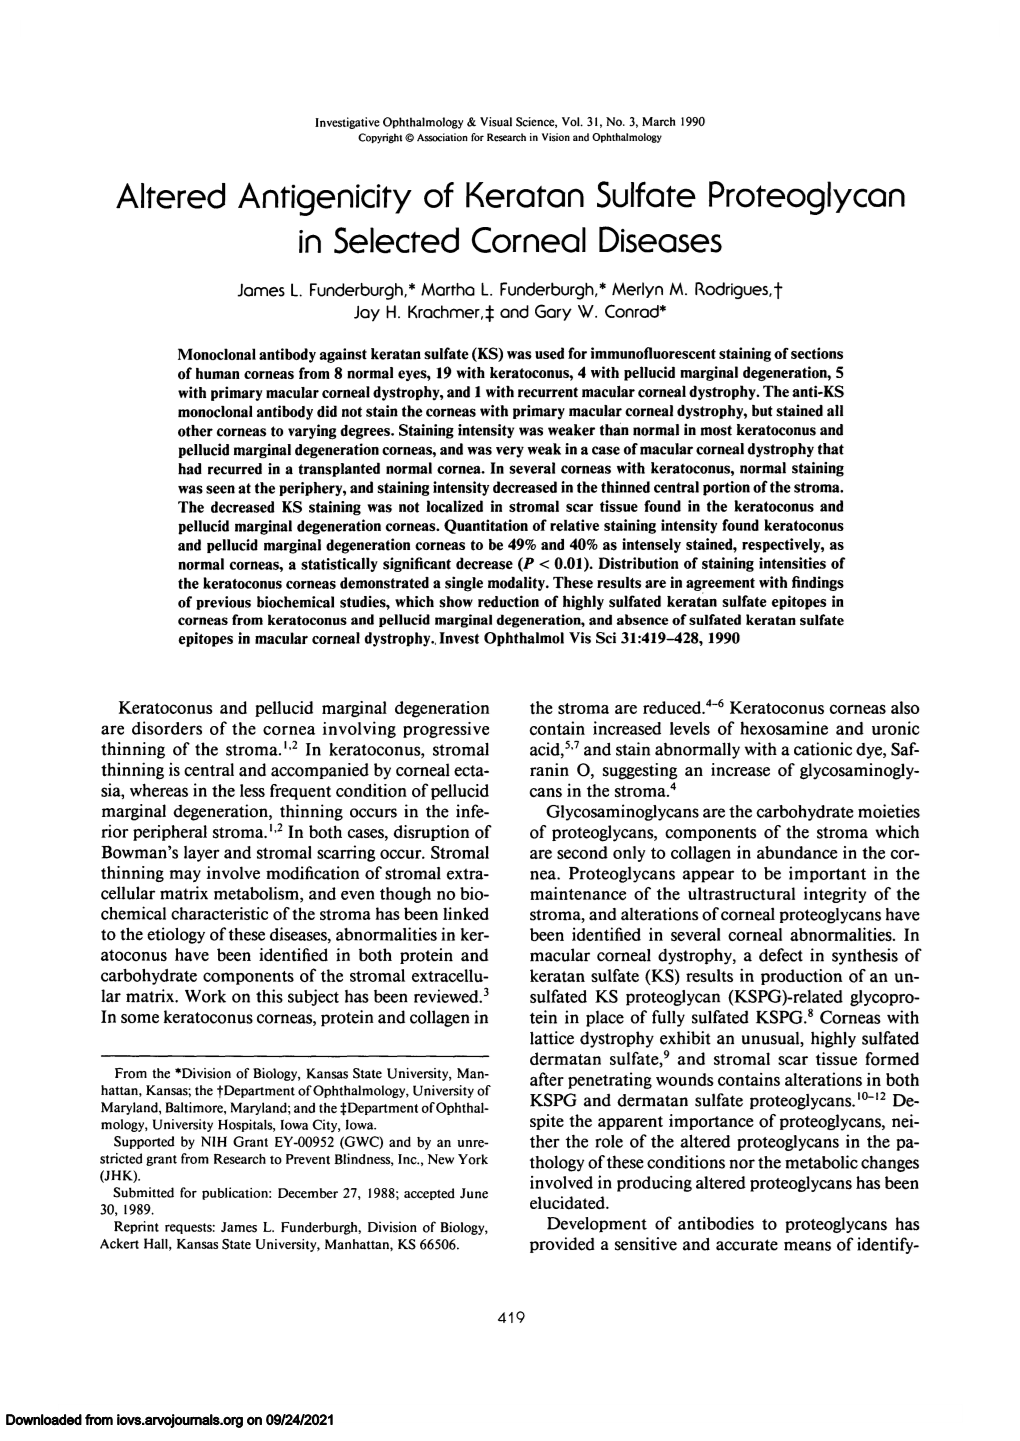 Altered Antigenicify of Keraton Sulfare Proreoglycan in Selected Corneal Diseases